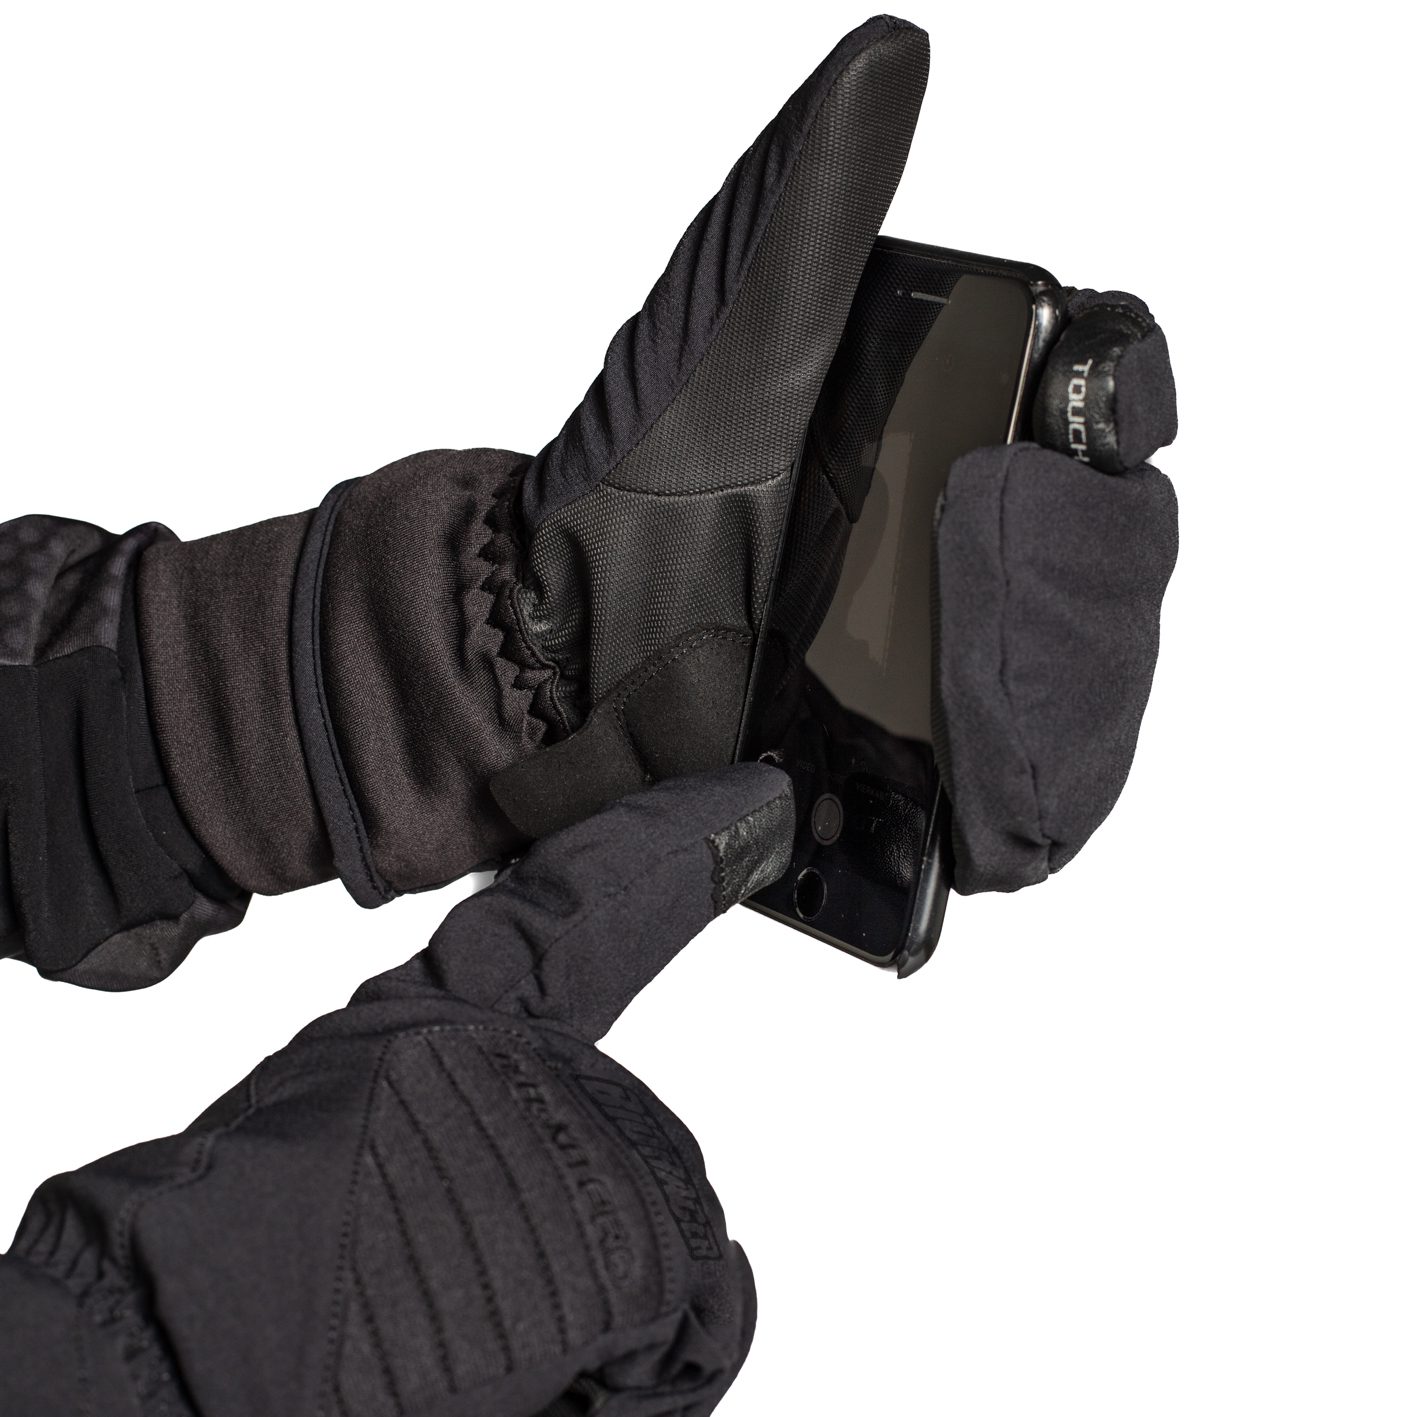 Alaska Pro Winter Gloves